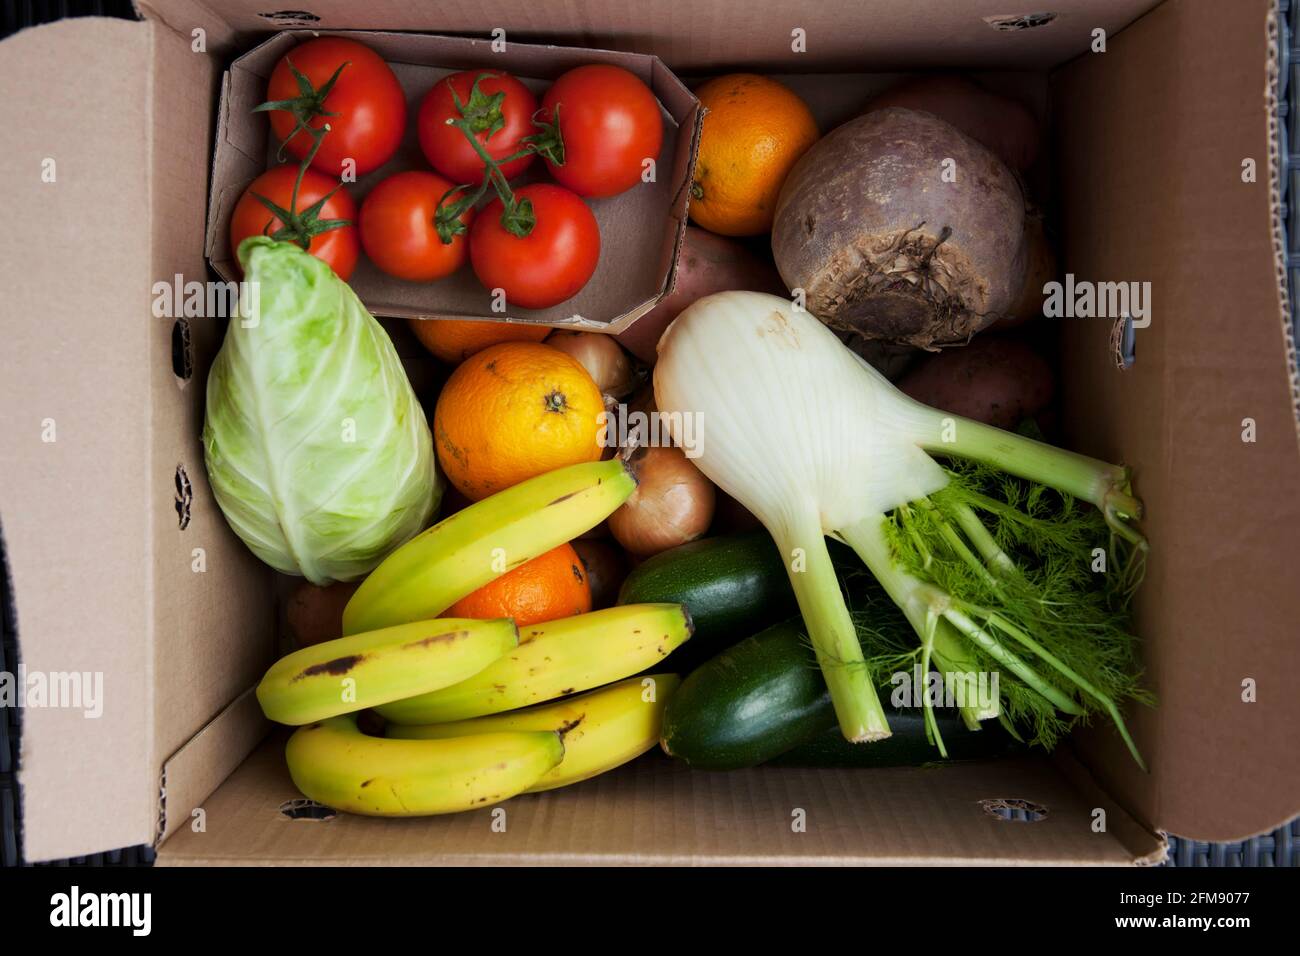 Im Karton: Eine Lieferung aus Bio-Gemüse mit Obst und Gemüse, verpackt in  einer Mehrweg-/Mehrweg-Box von Abel und Cole. Kunststoff frei  Stockfotografie - Alamy